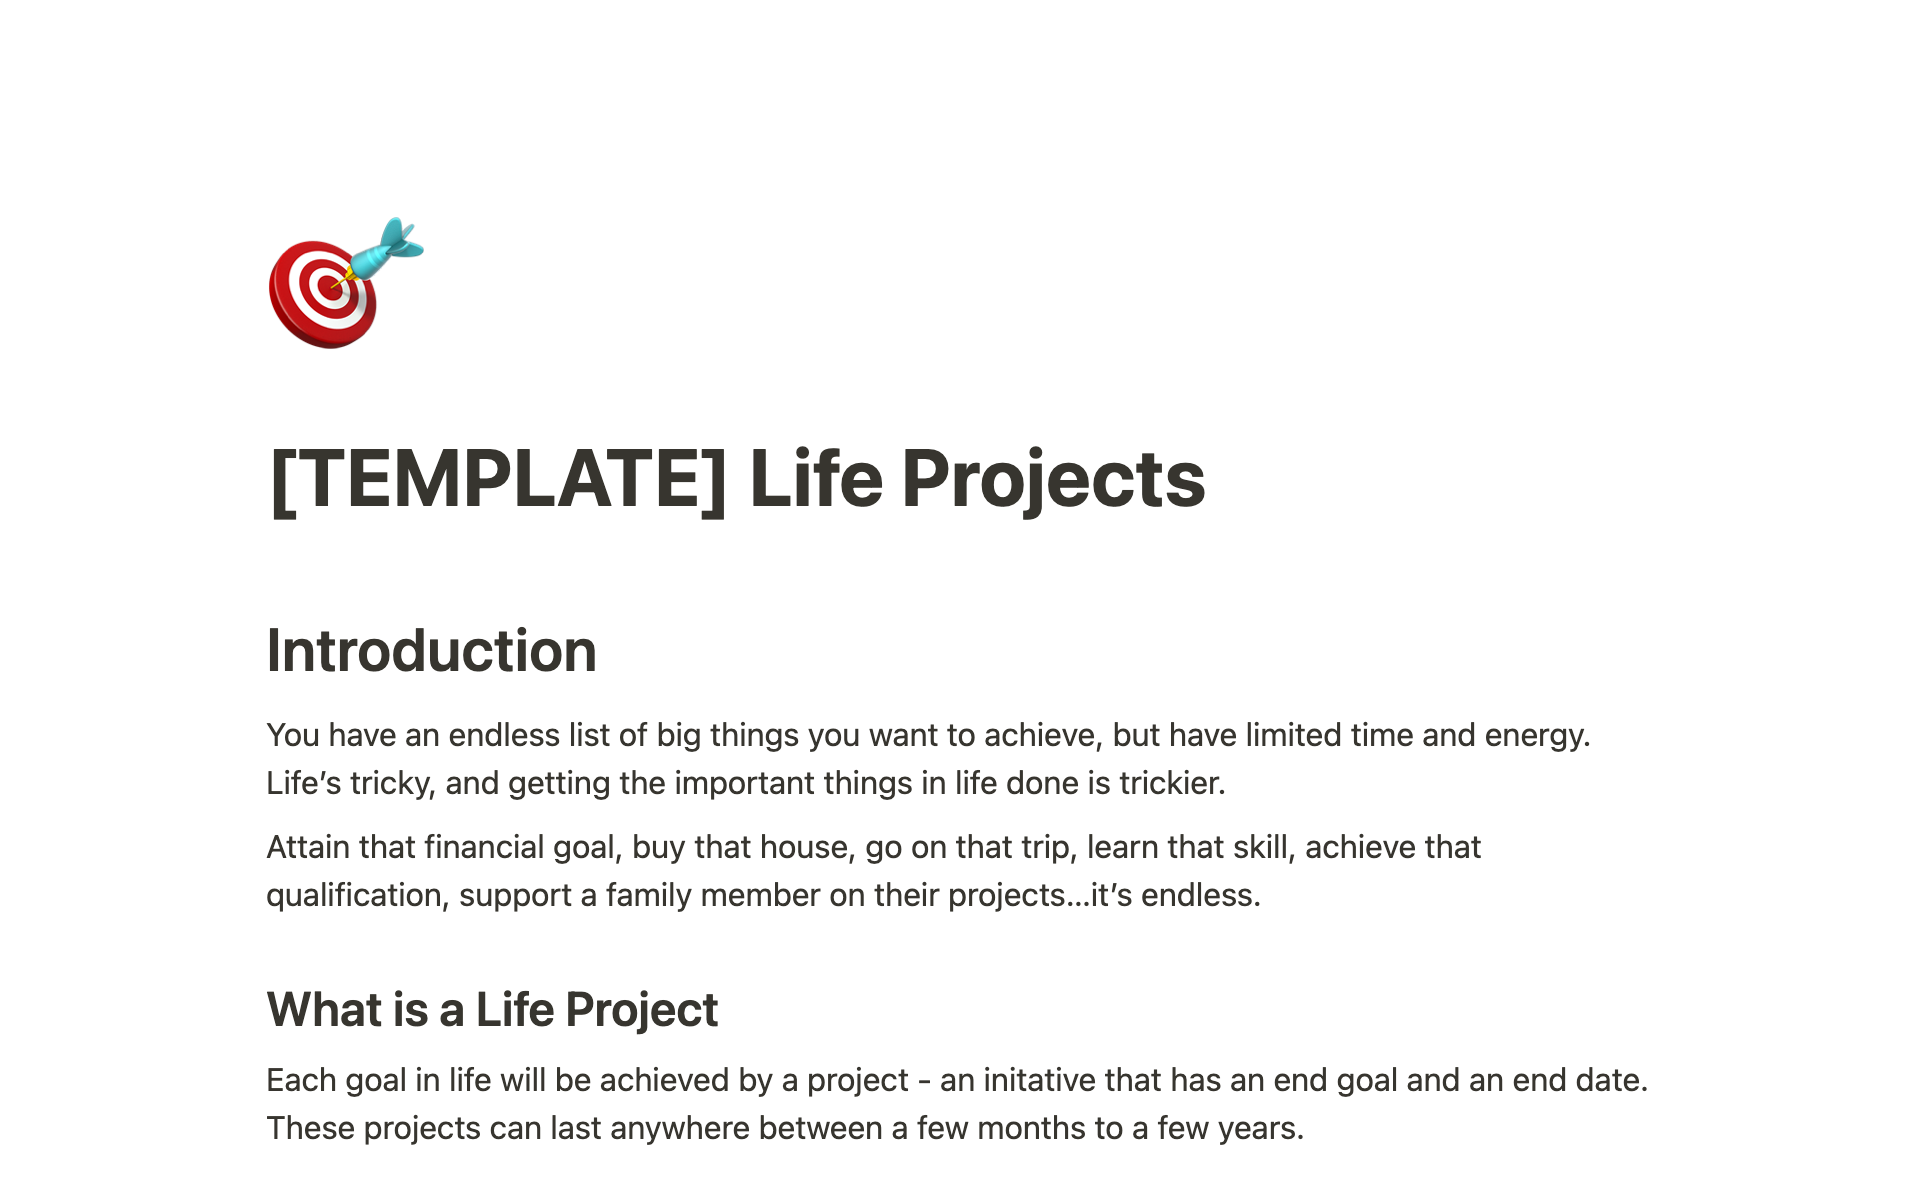 Vista previa de plantilla para Life Projects